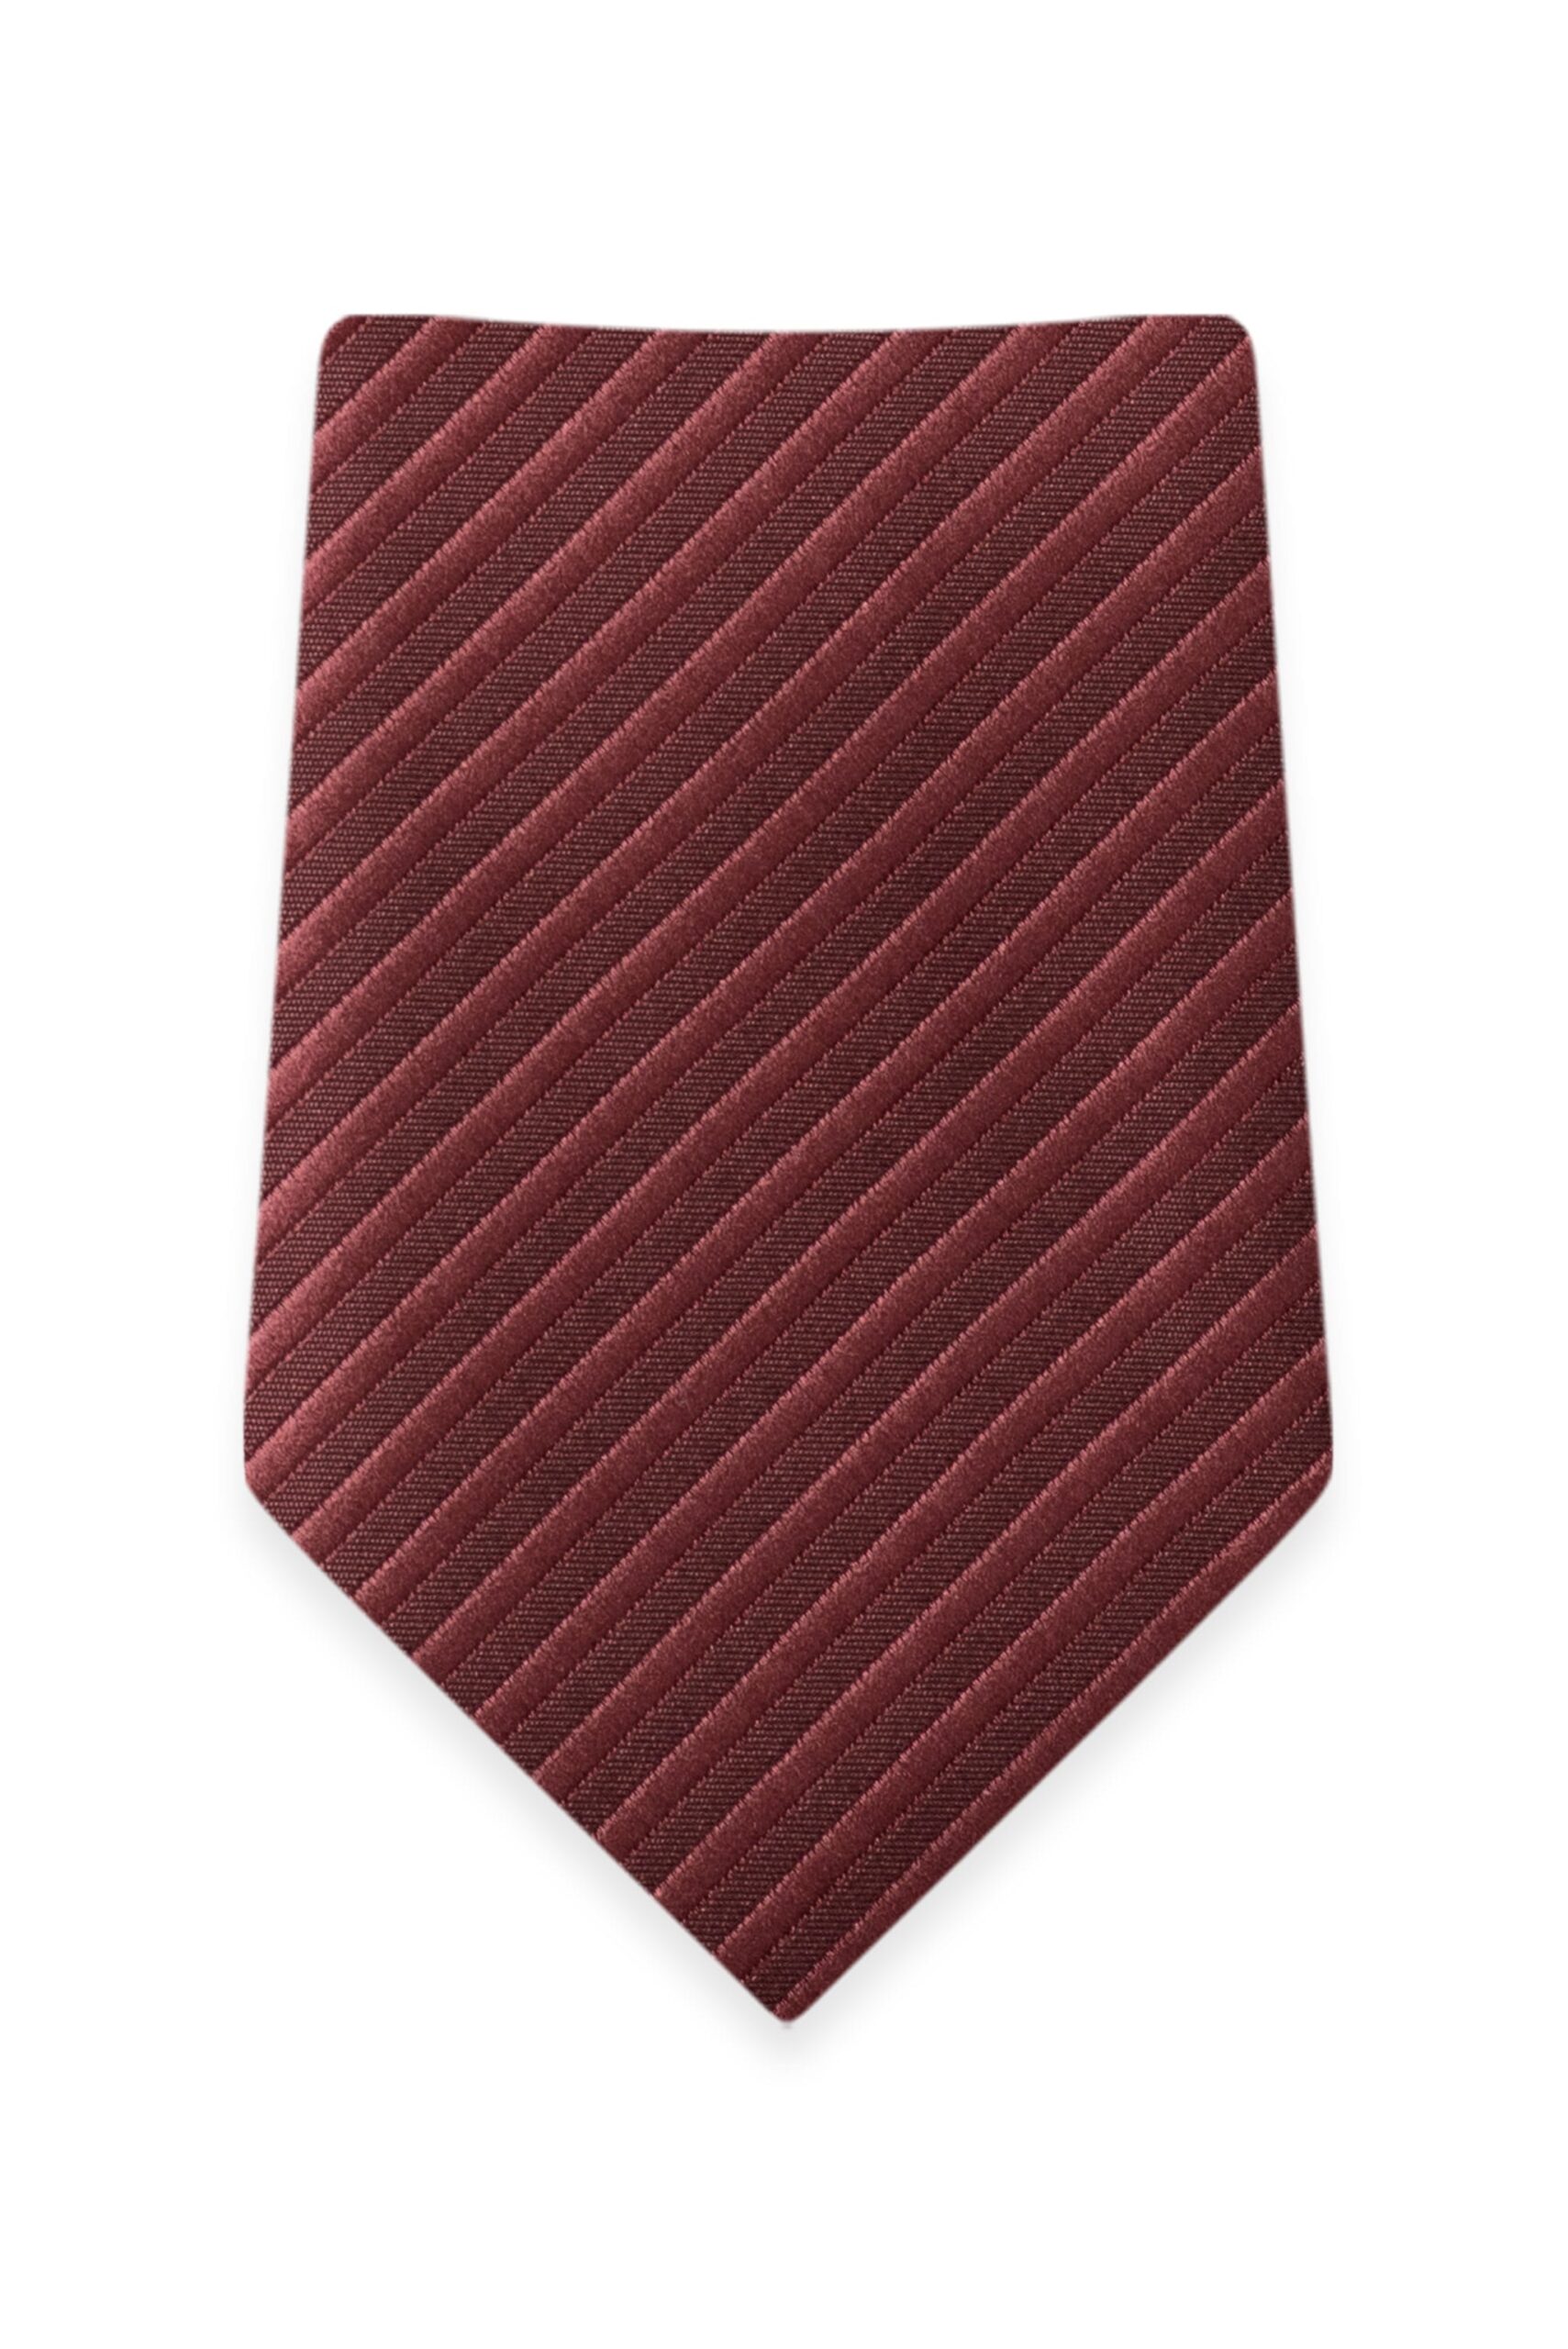 Striped Rosewood Self-Tie Windsor Tie 1